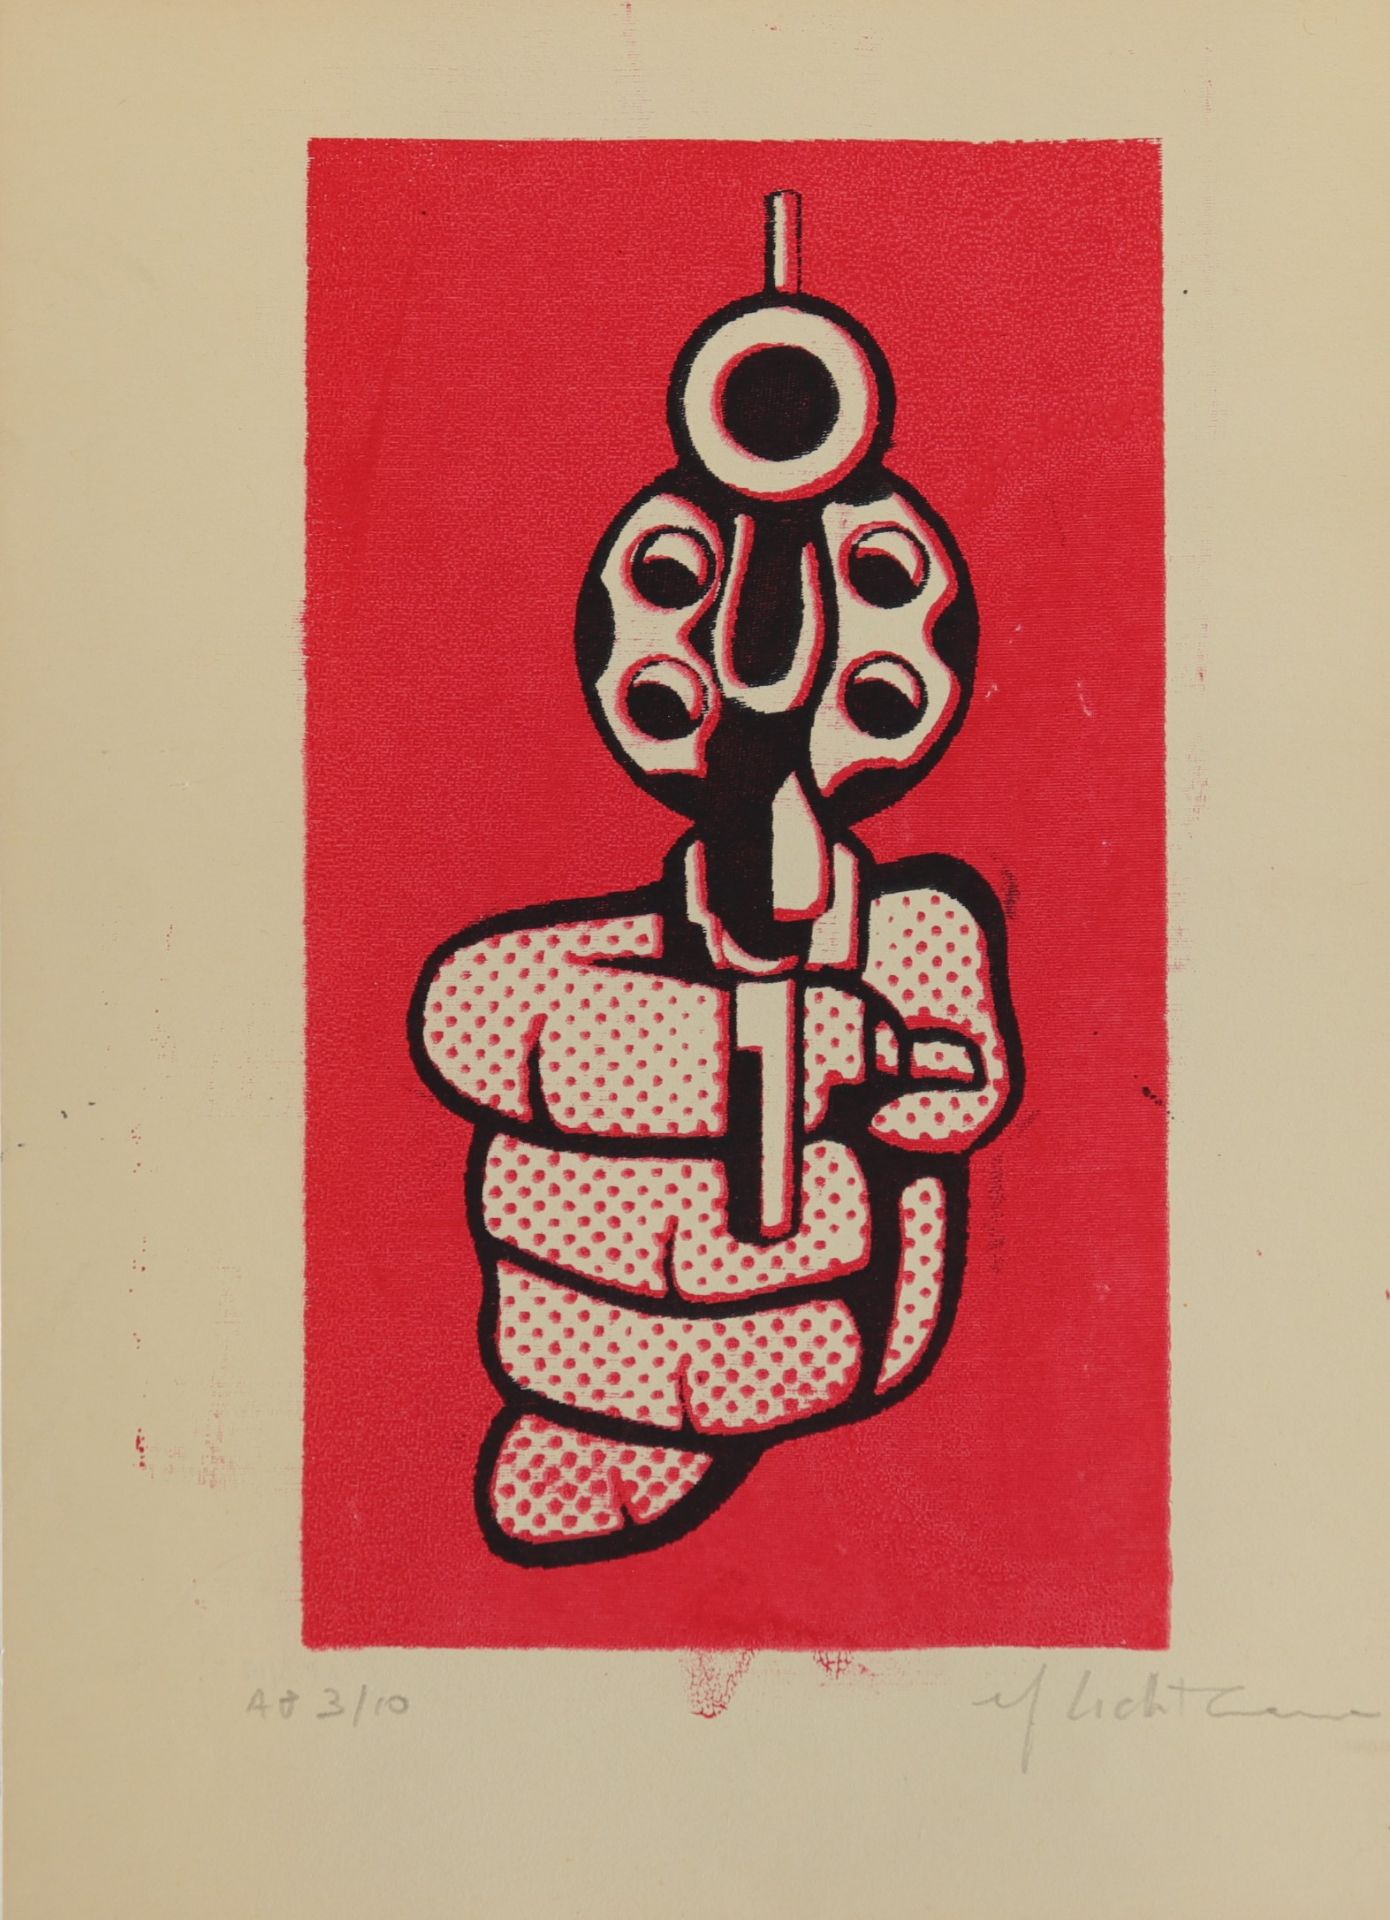 Roy Lichtenstein. "Pistol". 1964. Color offset on paper. Signed "Roy Lichtenstein" in pencil lower r